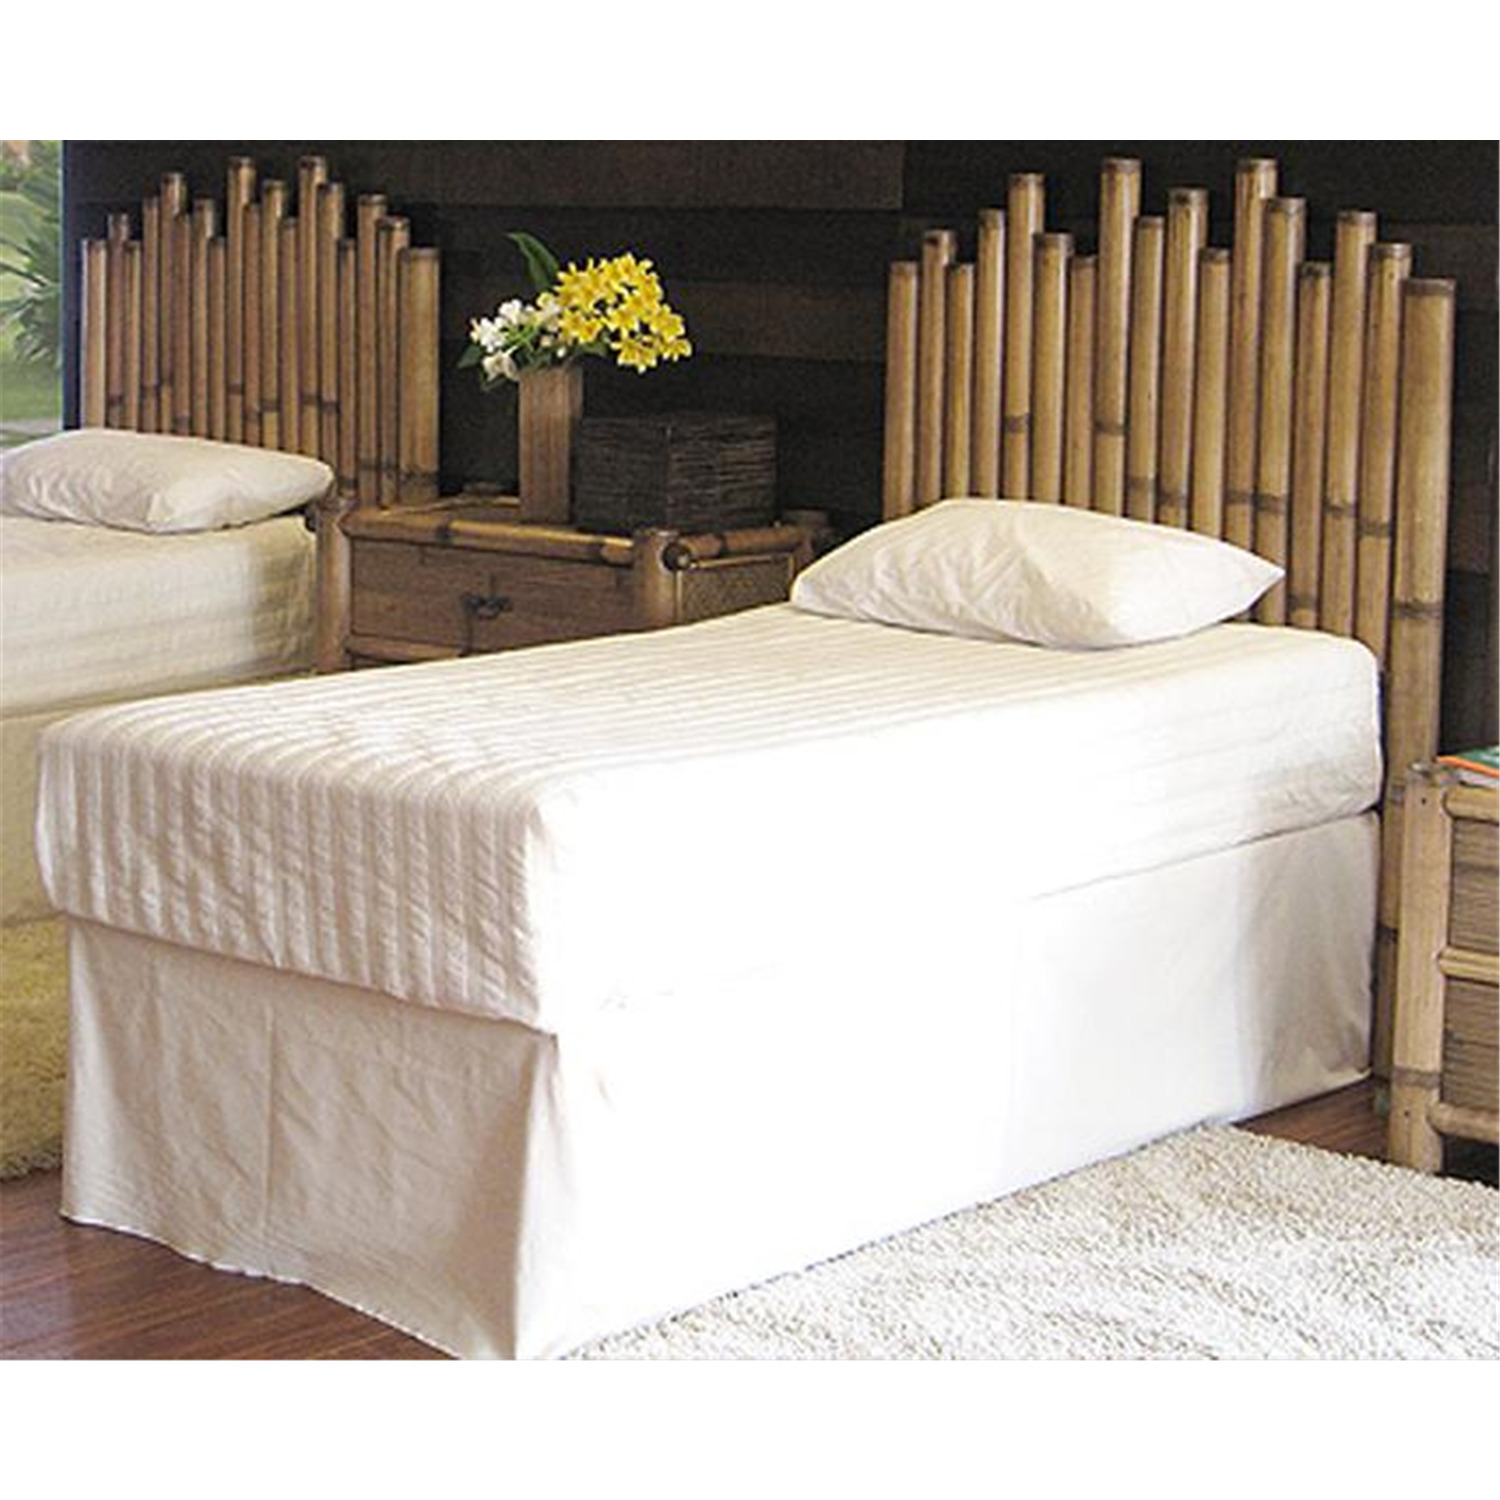 hospitality rattan havana bamboo bedroom set queen